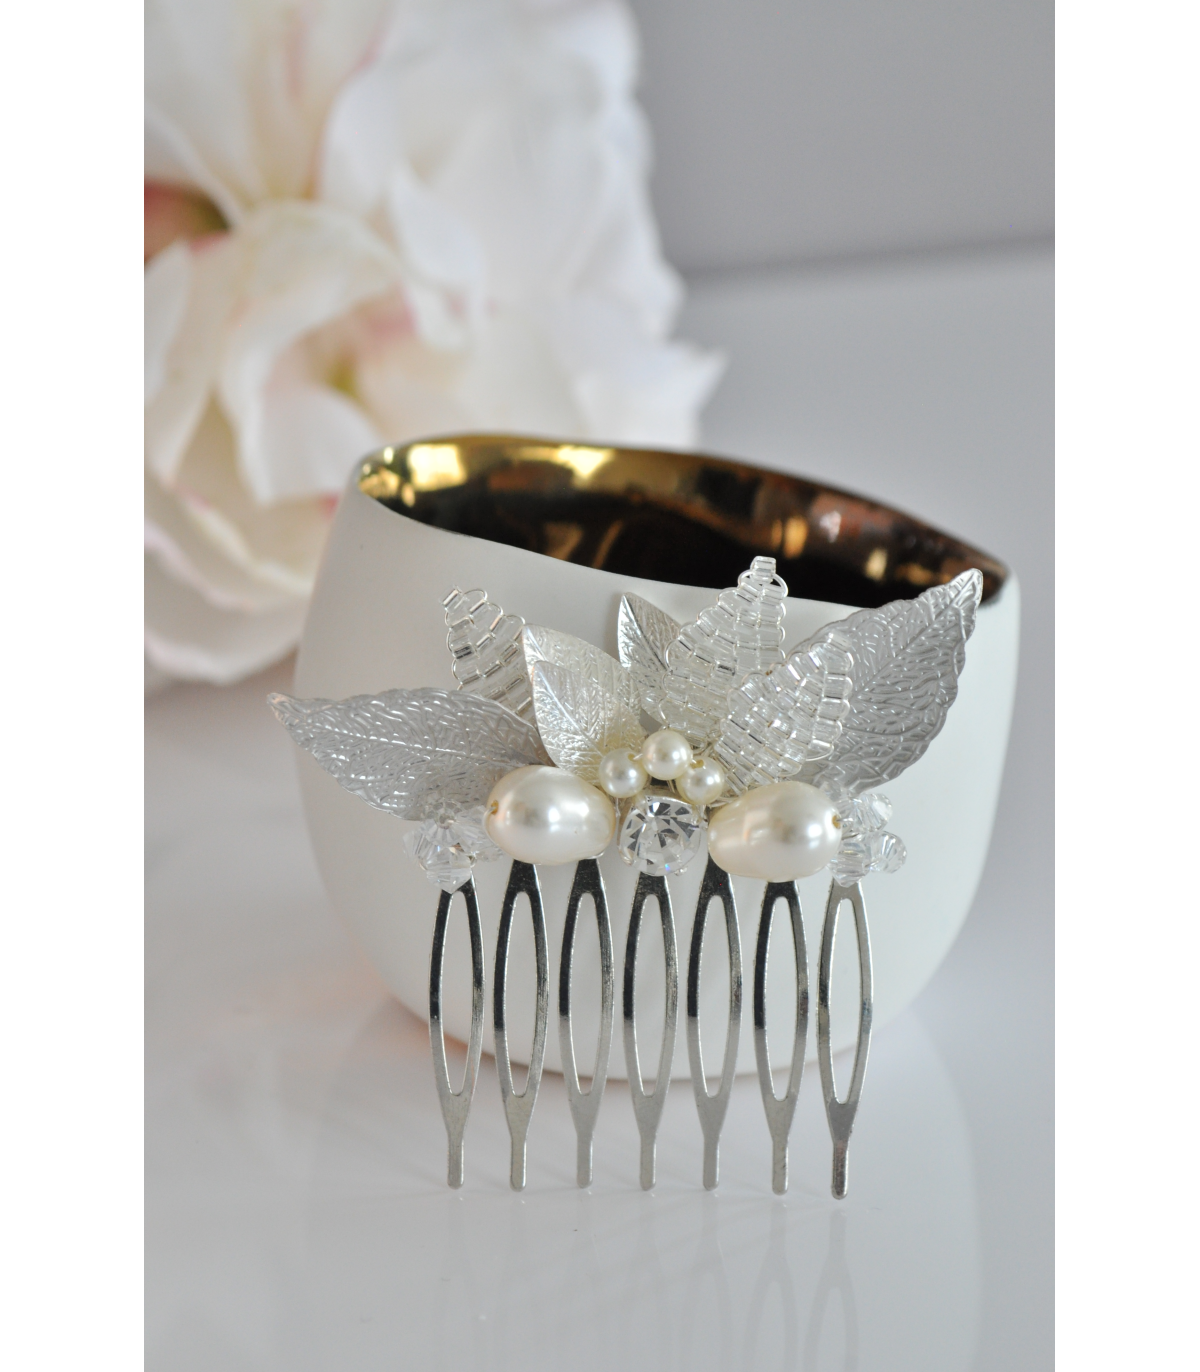 Peigne Ondine pour la mariée composé de feuilles argentées et de perles de cristal, de strass. Touche lumineuse dans vos cheveux